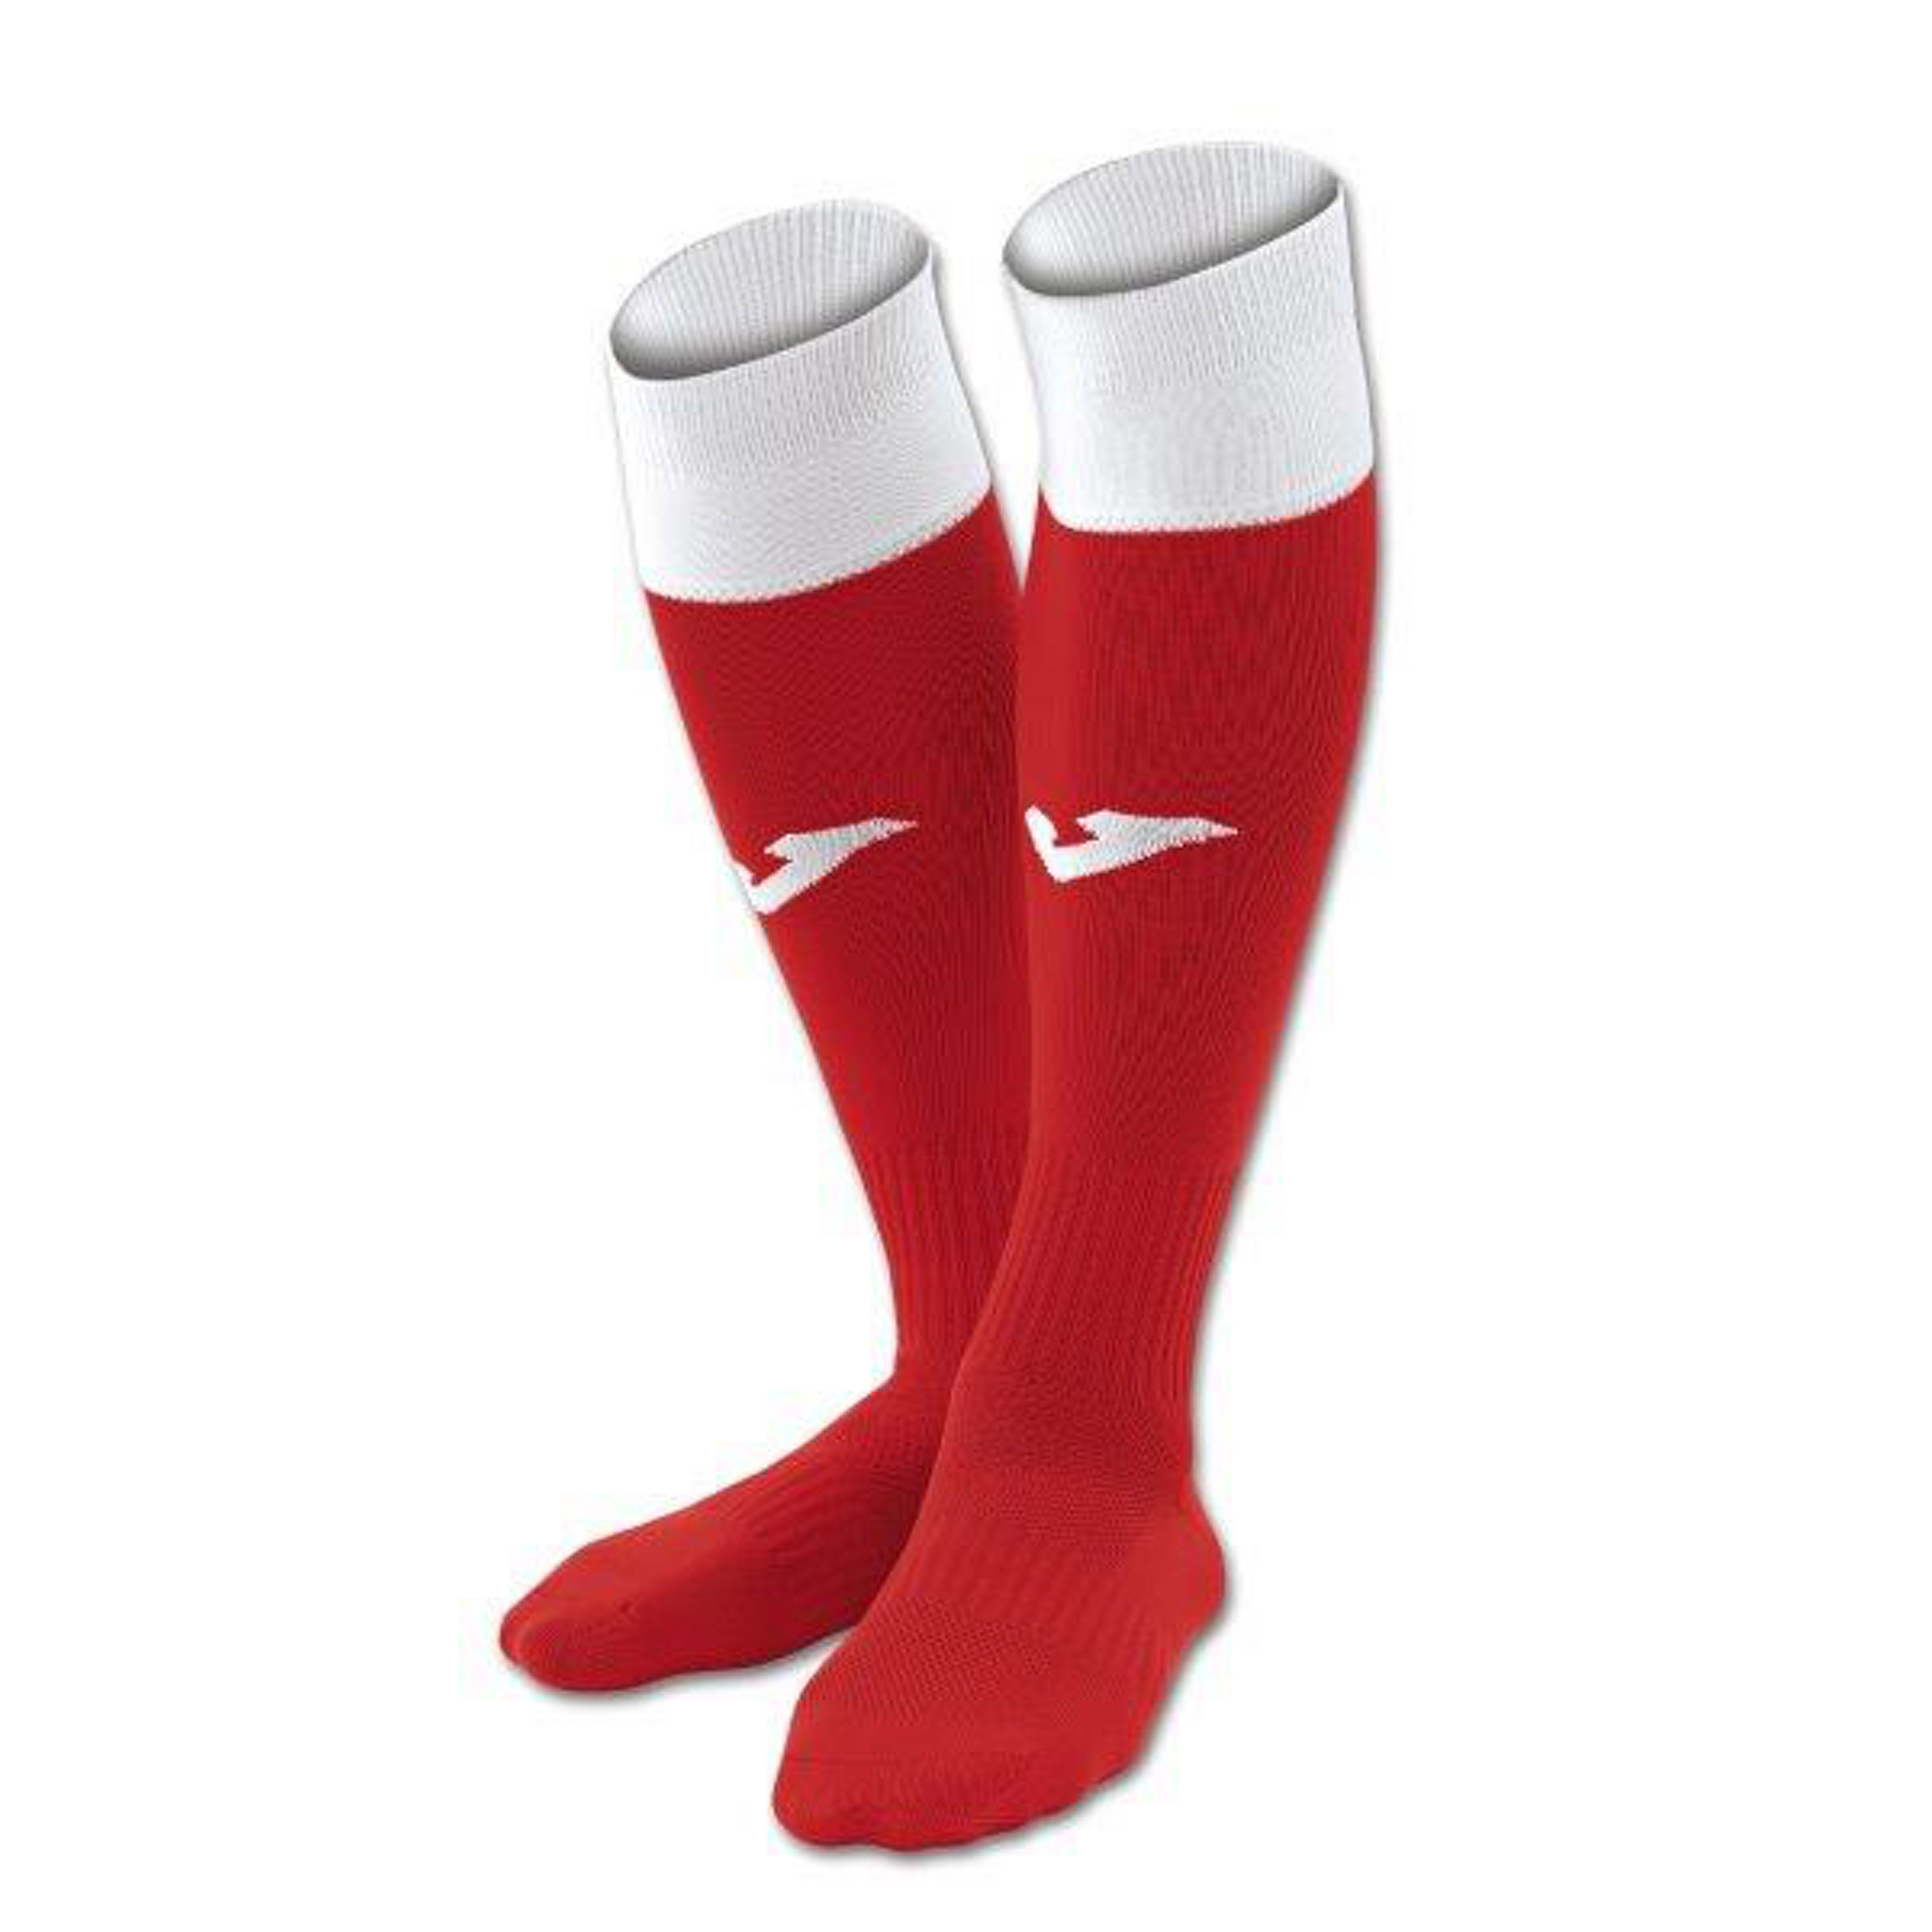 Joma Calcio Sock S (12-1.5) Red-wht